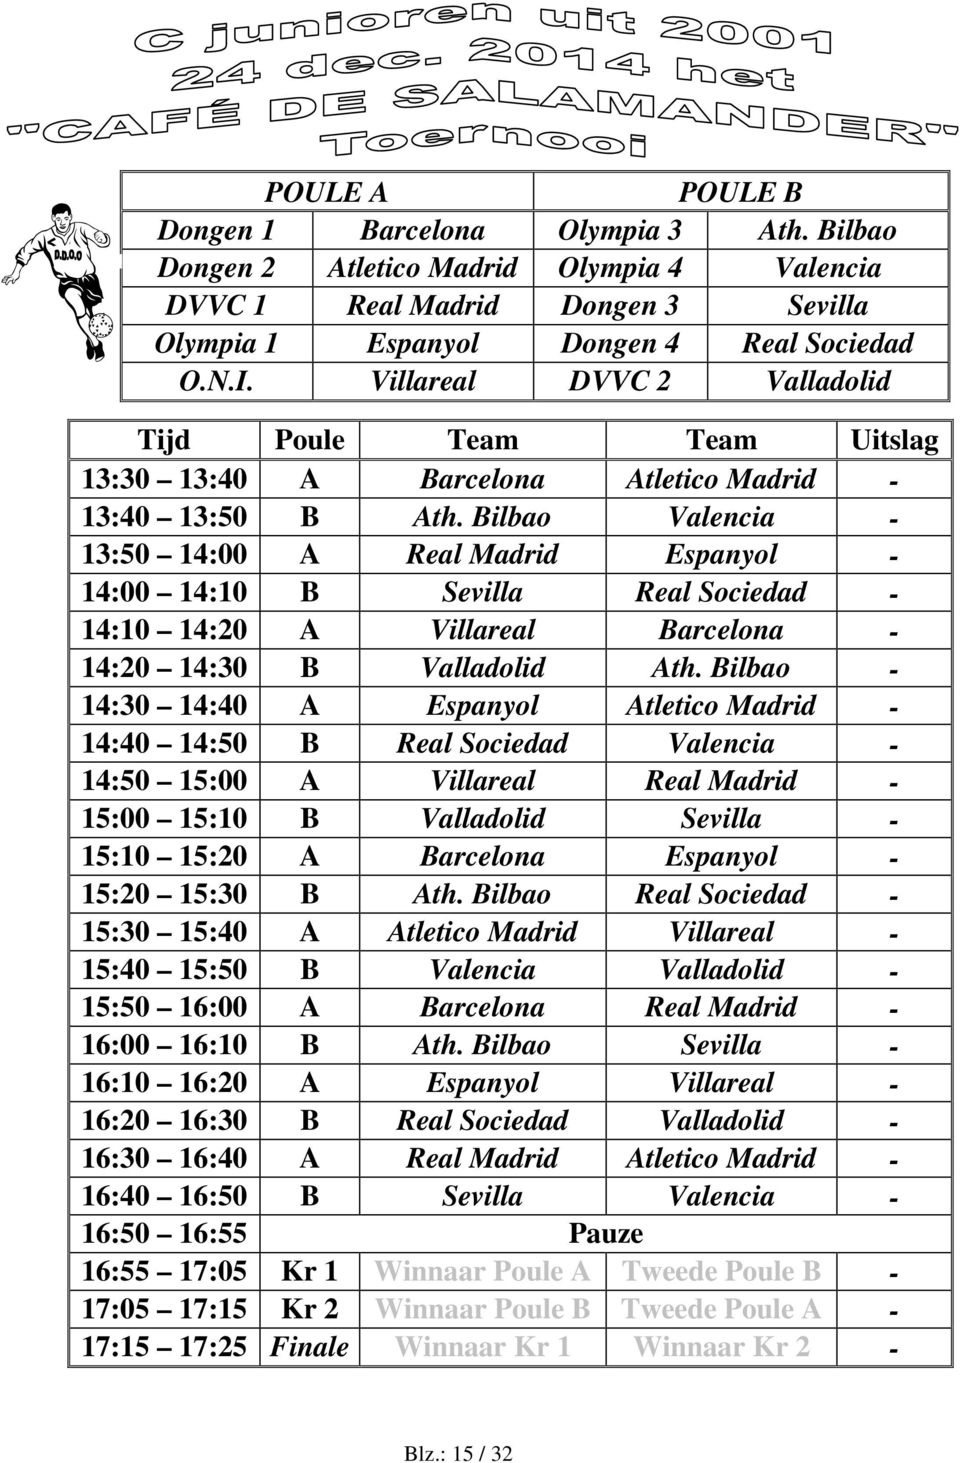 Bilbao Valencia - 13:50 14:00 A Real Madrid Espanyol - 14:00 14:10 B Sevilla Real Sociedad - 14:10 14:20 A Villareal Barcelona - 14:20 14:30 B Valladolid Ath.